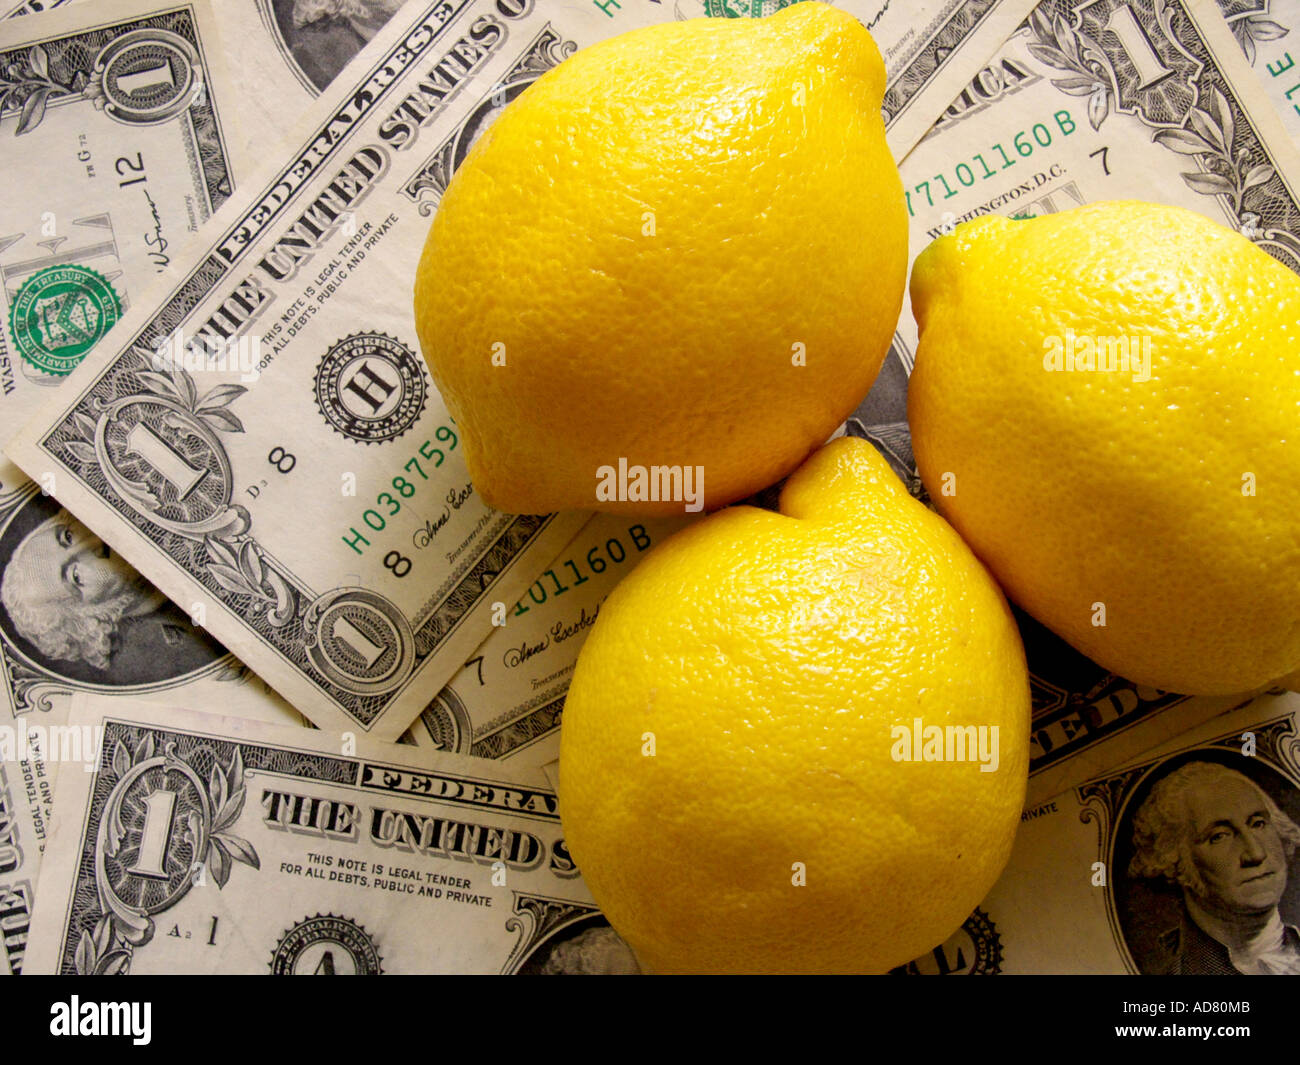 Fresh lemons in soft light against a background of dollar bills Stock Photo